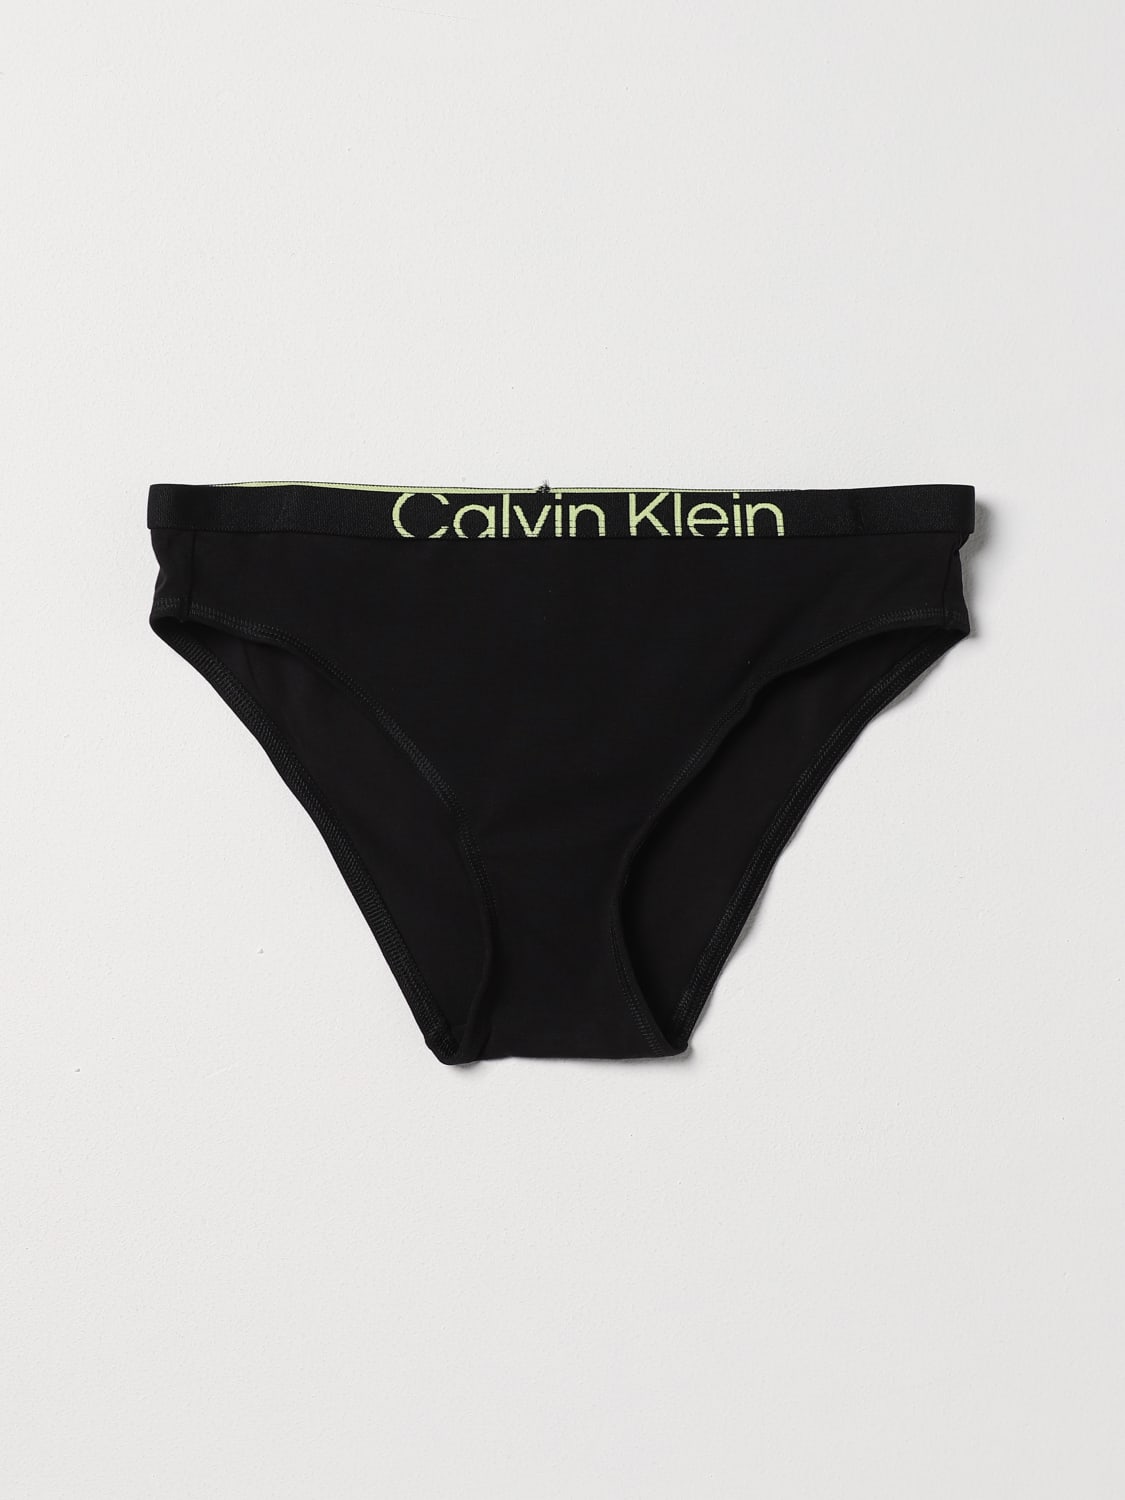 CALVIN KLEIN UNDERWEAR: Lingerie femme Ck Underwear - Noir